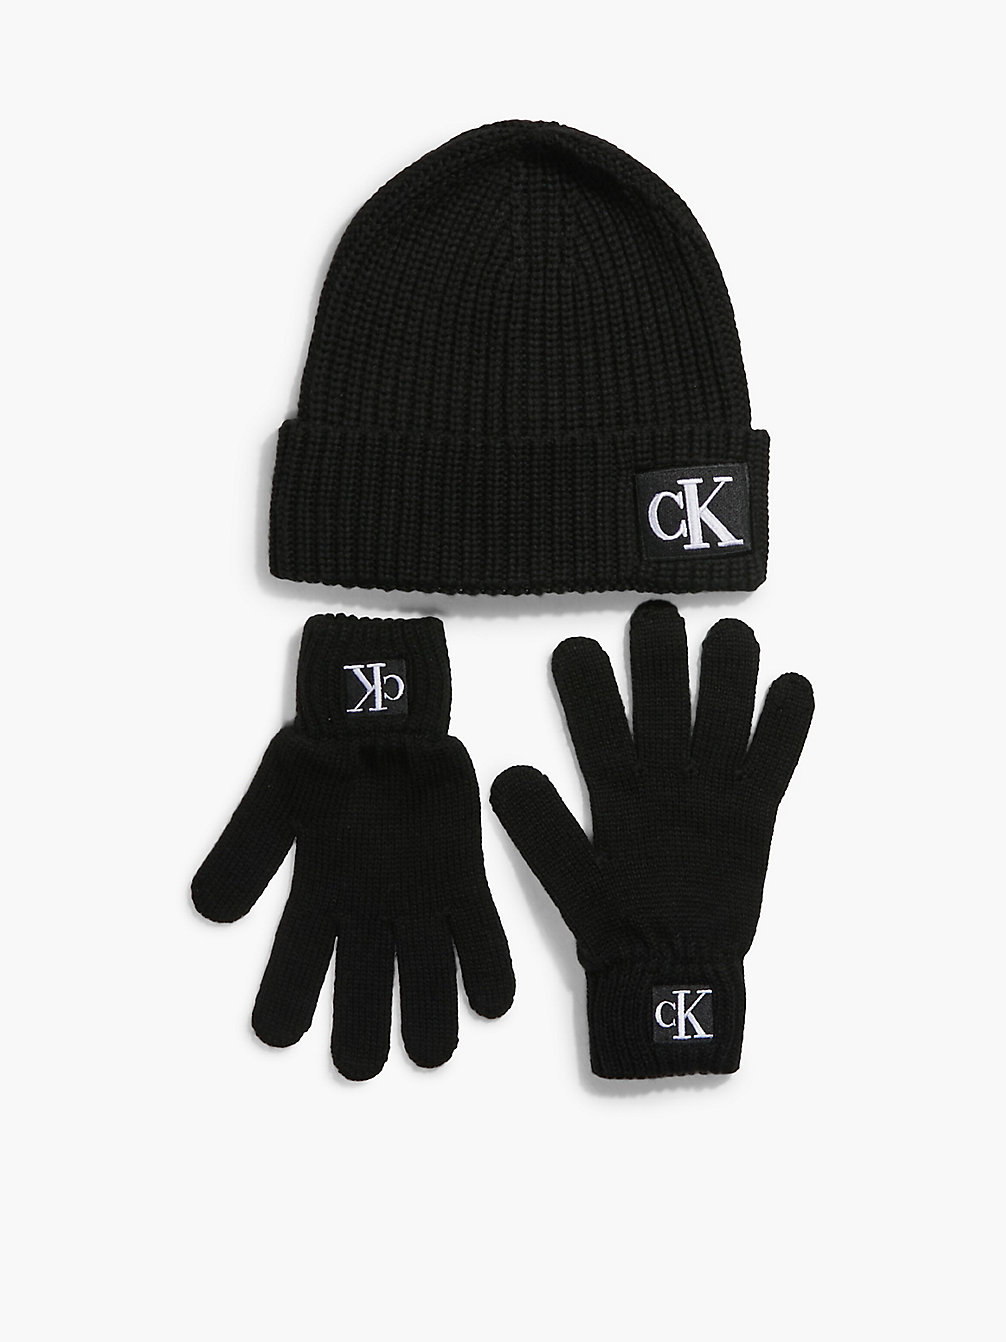 CK BLACK Unisex Set Aus Handschuhen Und Mütze undefined kids unisex Calvin Klein